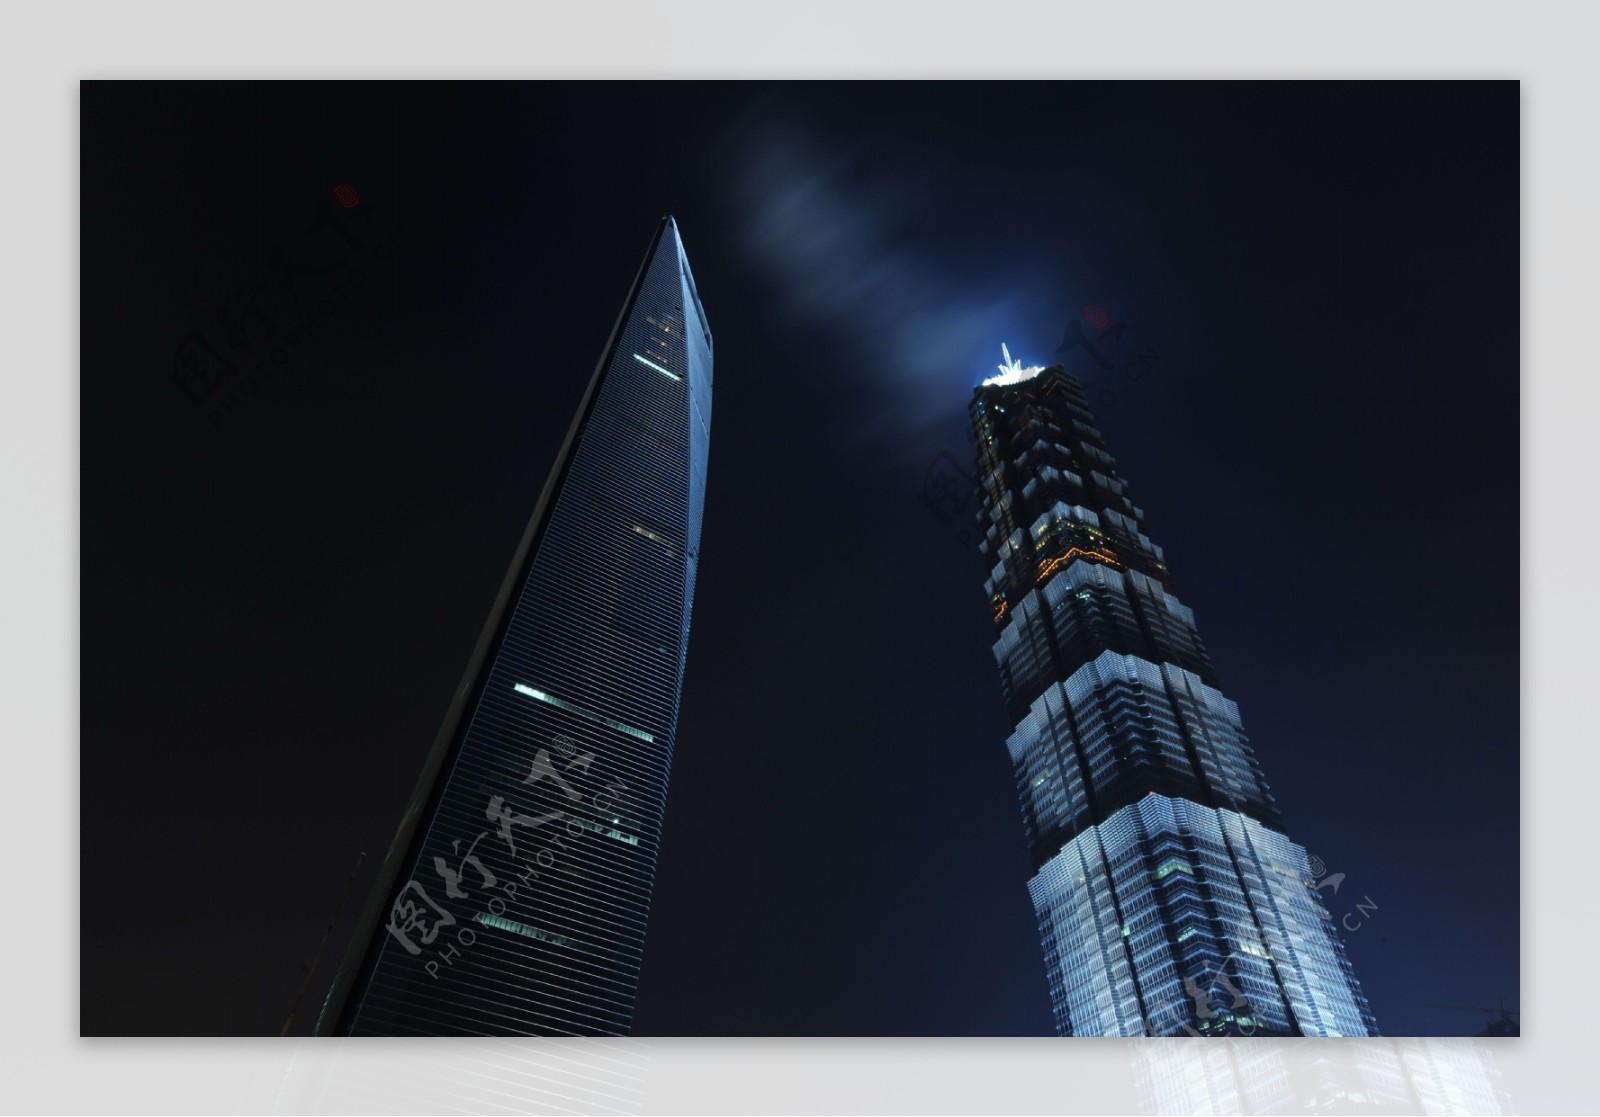 上海金茂大厦环球金融中心夜景图片